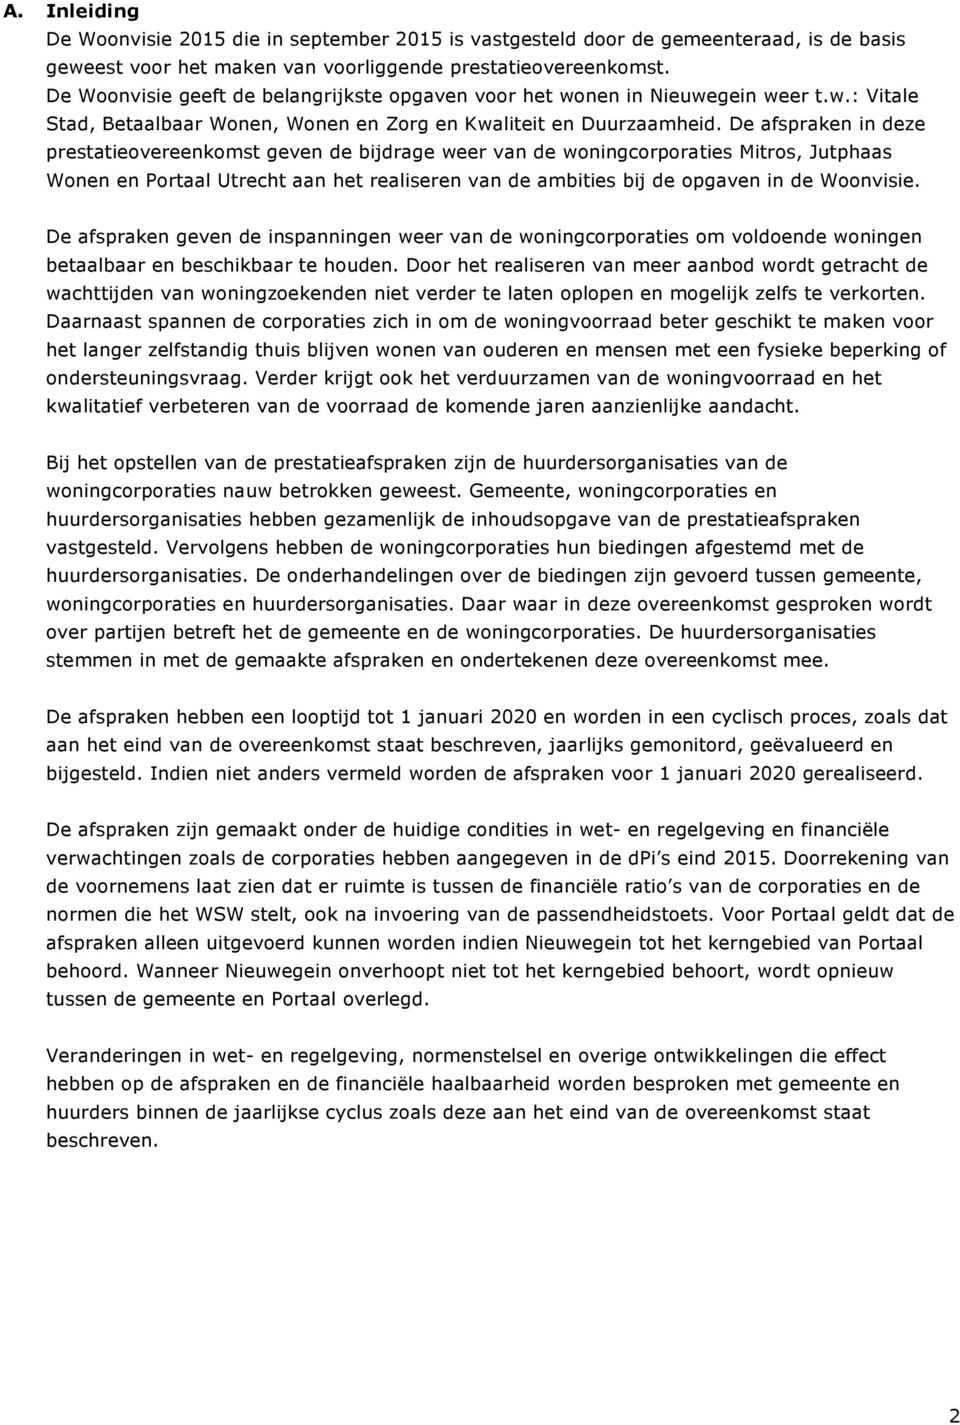 De afspraken in deze prestatieovereenkomst geven de bijdrage weer van de woningcorporaties Mitros, Jutphaas Wonen en Portaal Utrecht aan het realiseren van de ambities bij de opgaven in de Woonvisie.